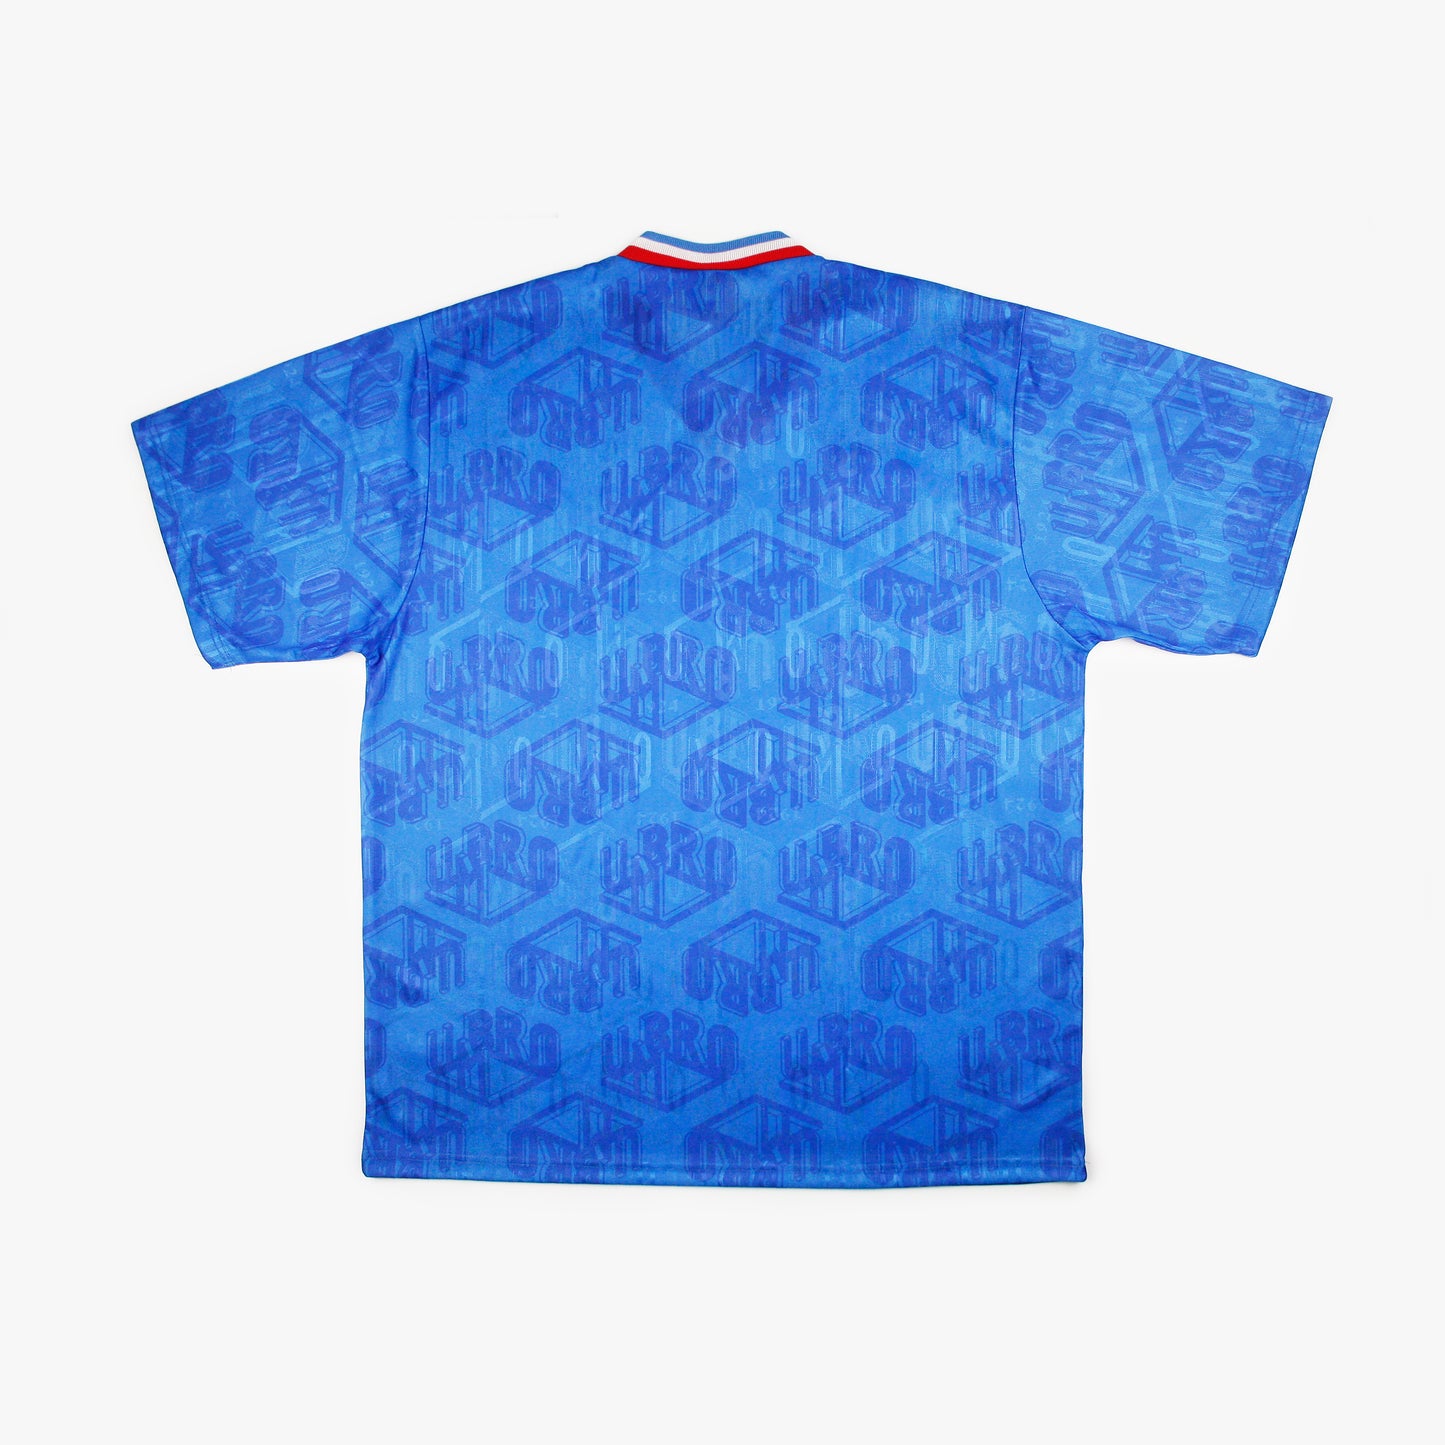 Umbro 90s • Camiseta Genérica *Con Etiquetas* • XL